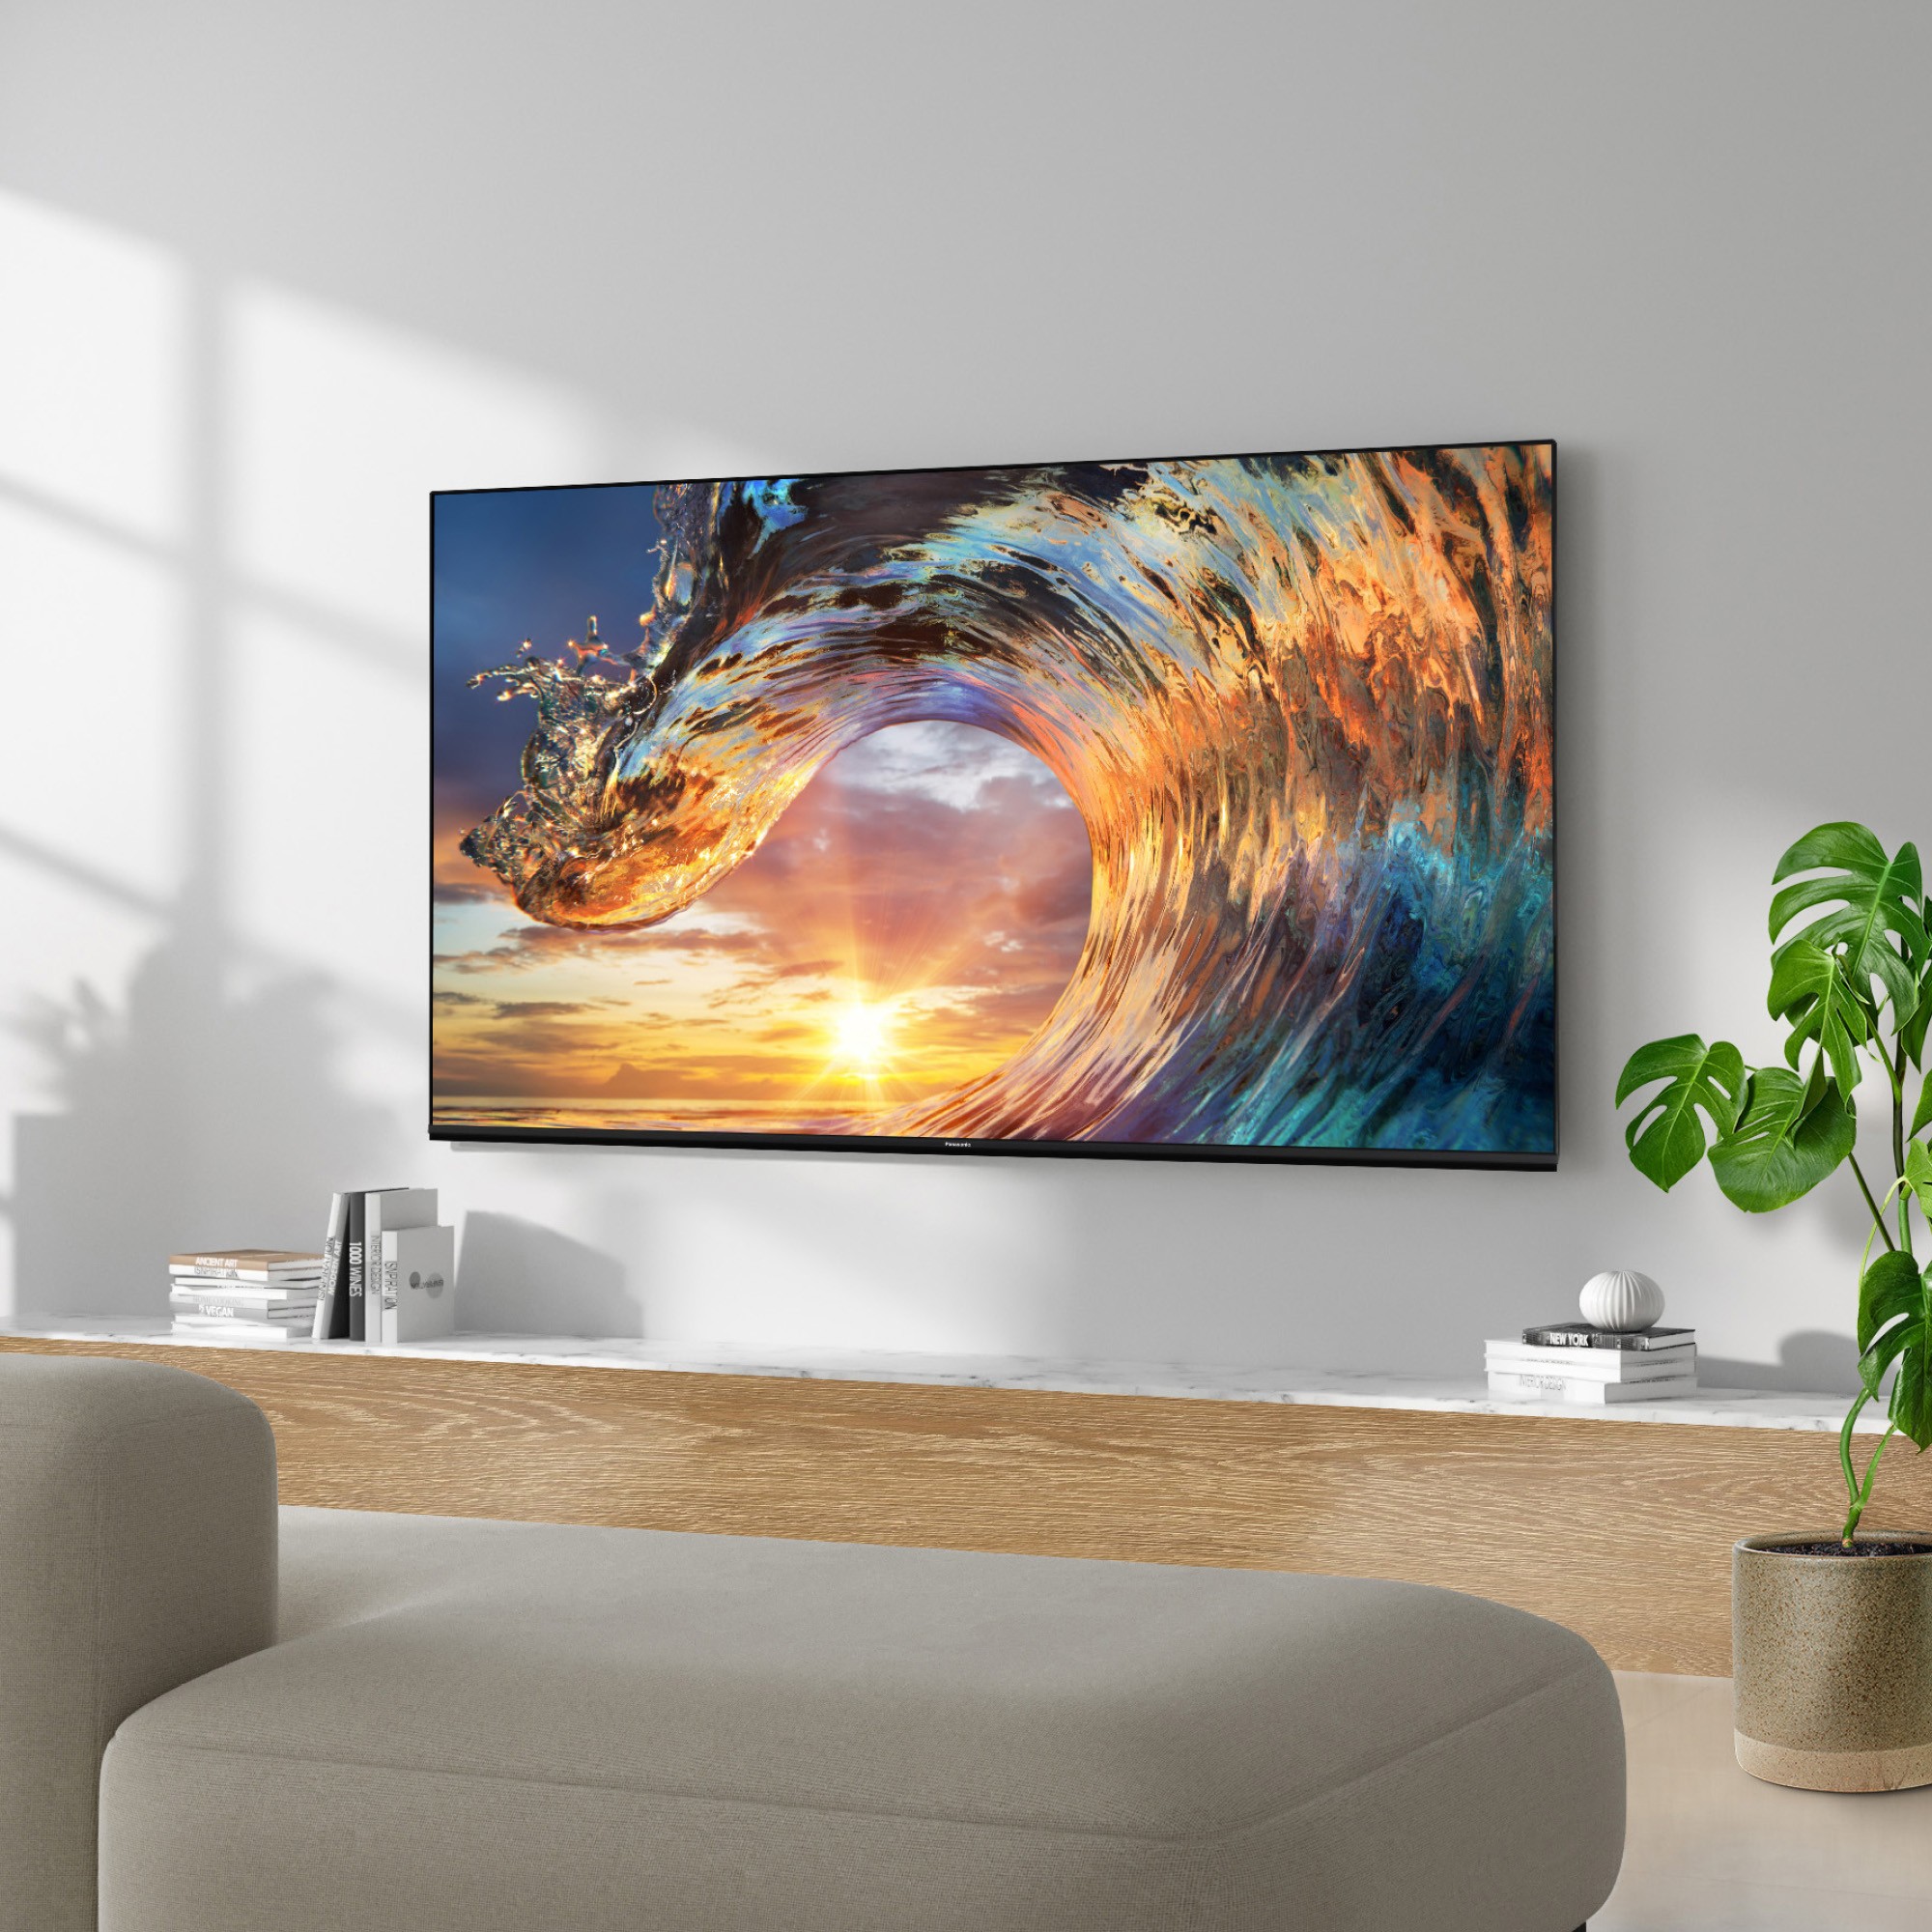 PANASONIC TV OLED 4K 106 cm  - TX-42MZ800E